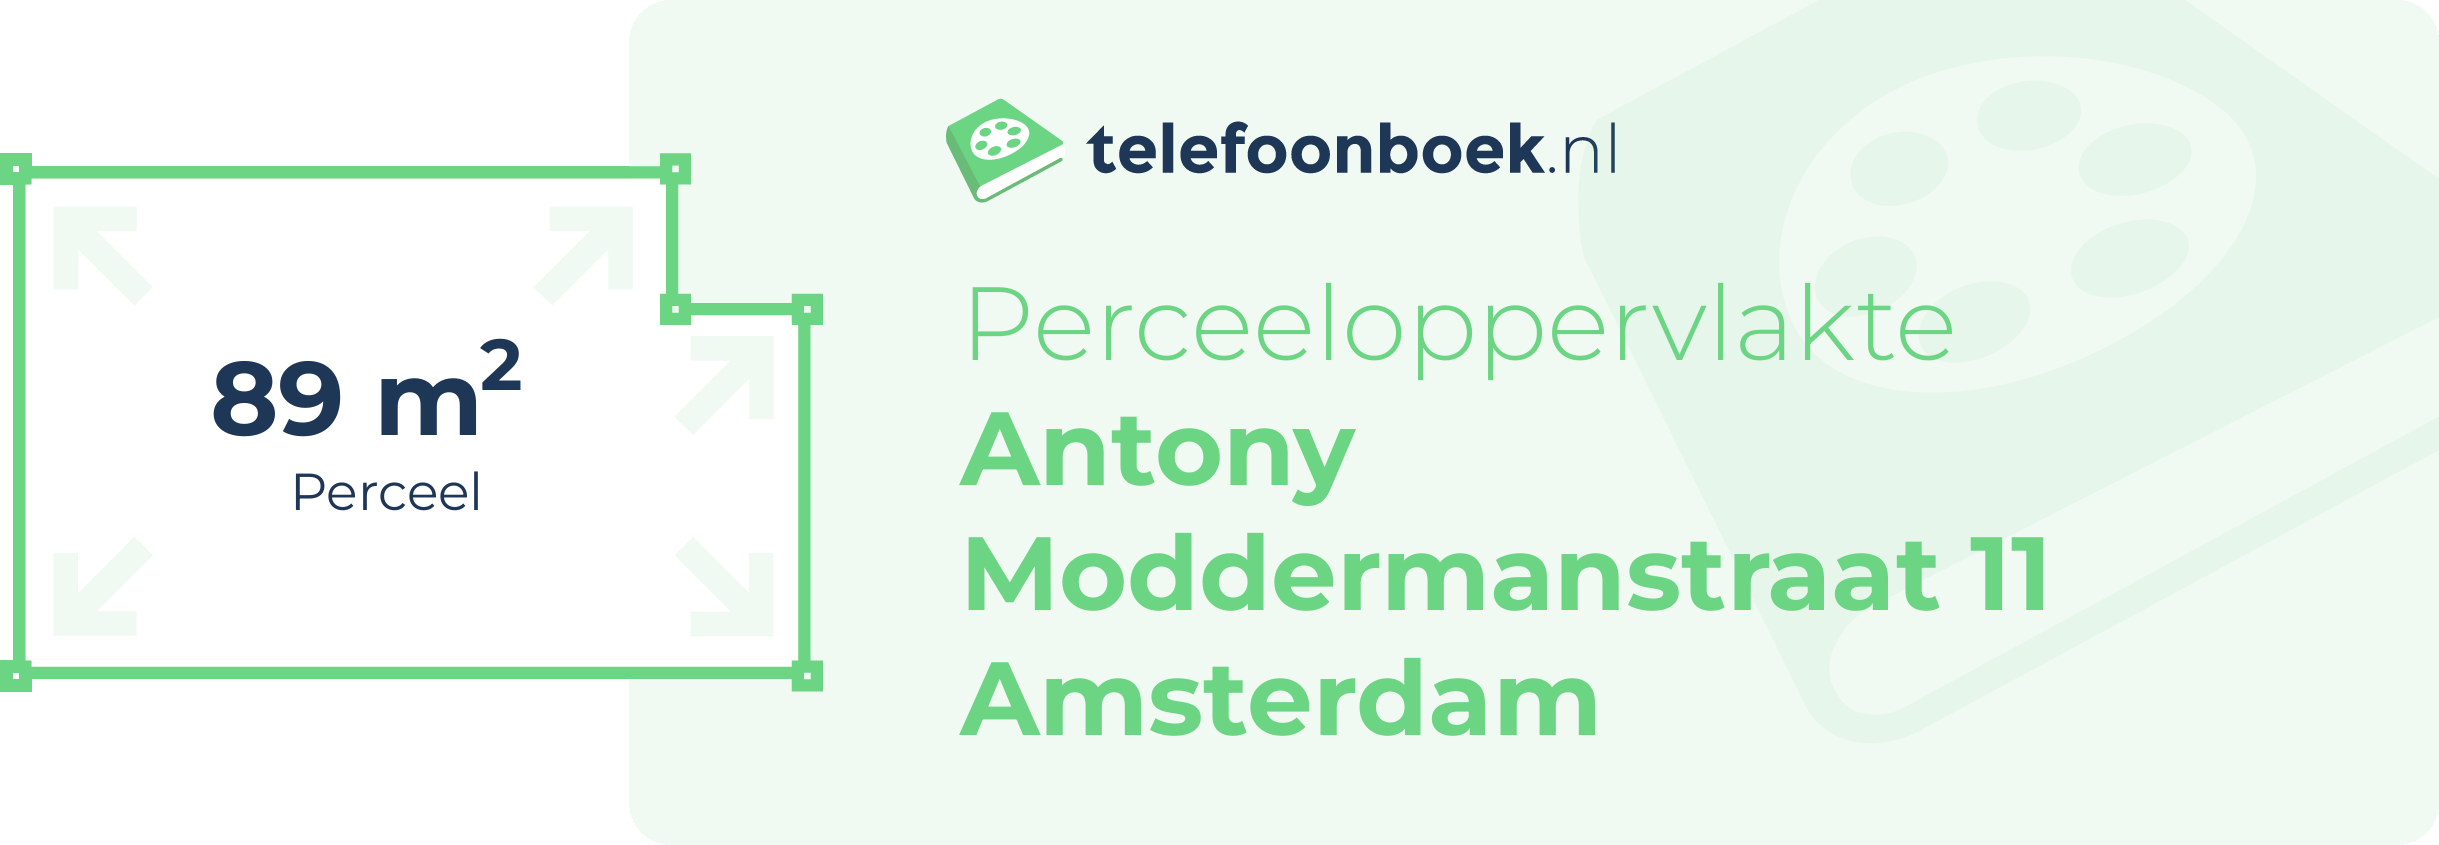 Perceeloppervlakte Antony Moddermanstraat 11 Amsterdam